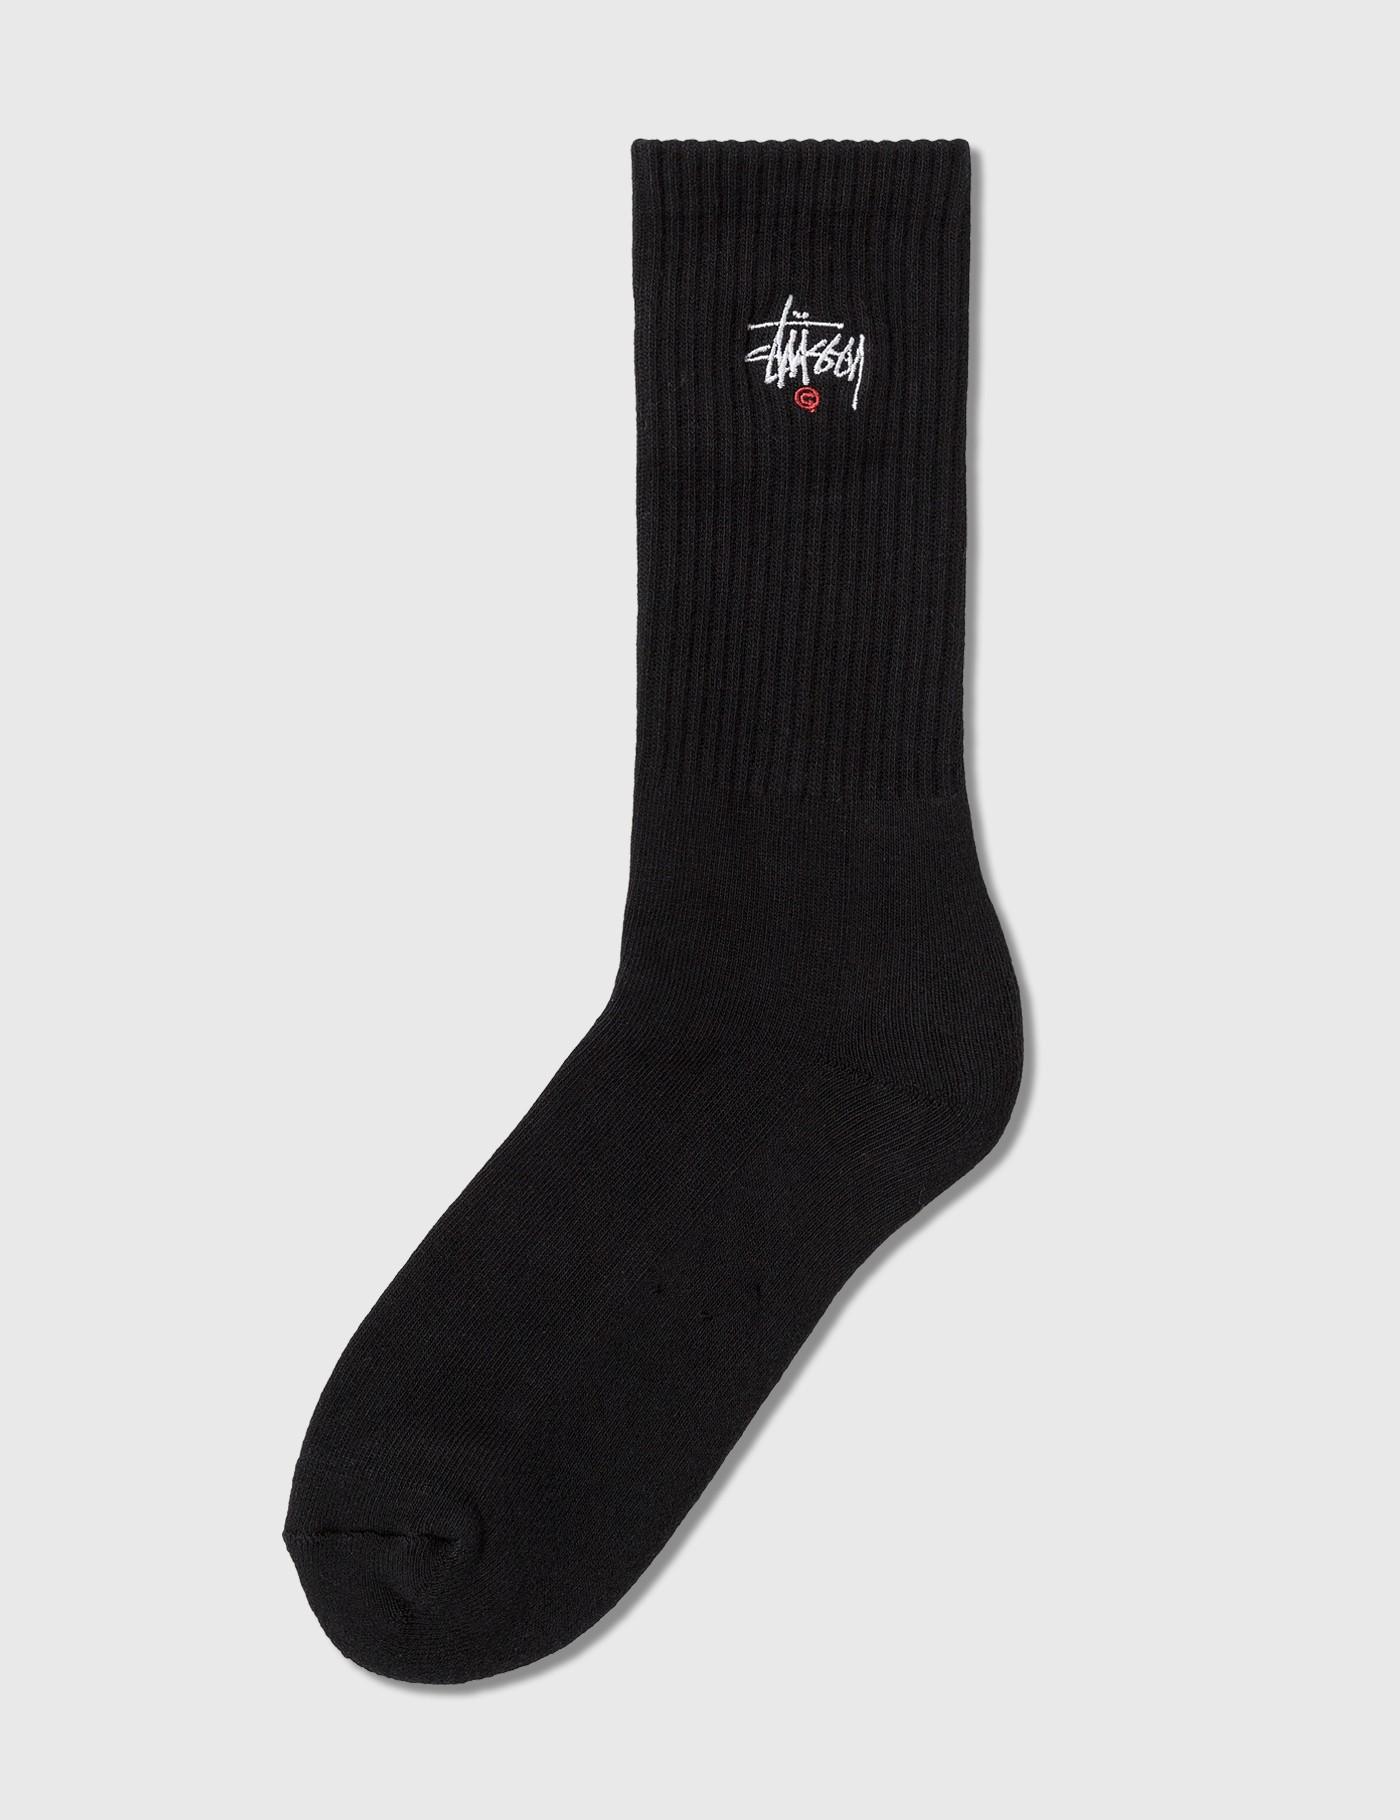 Stussy Basic Logo Crew Socks in Black for Men - Lyst